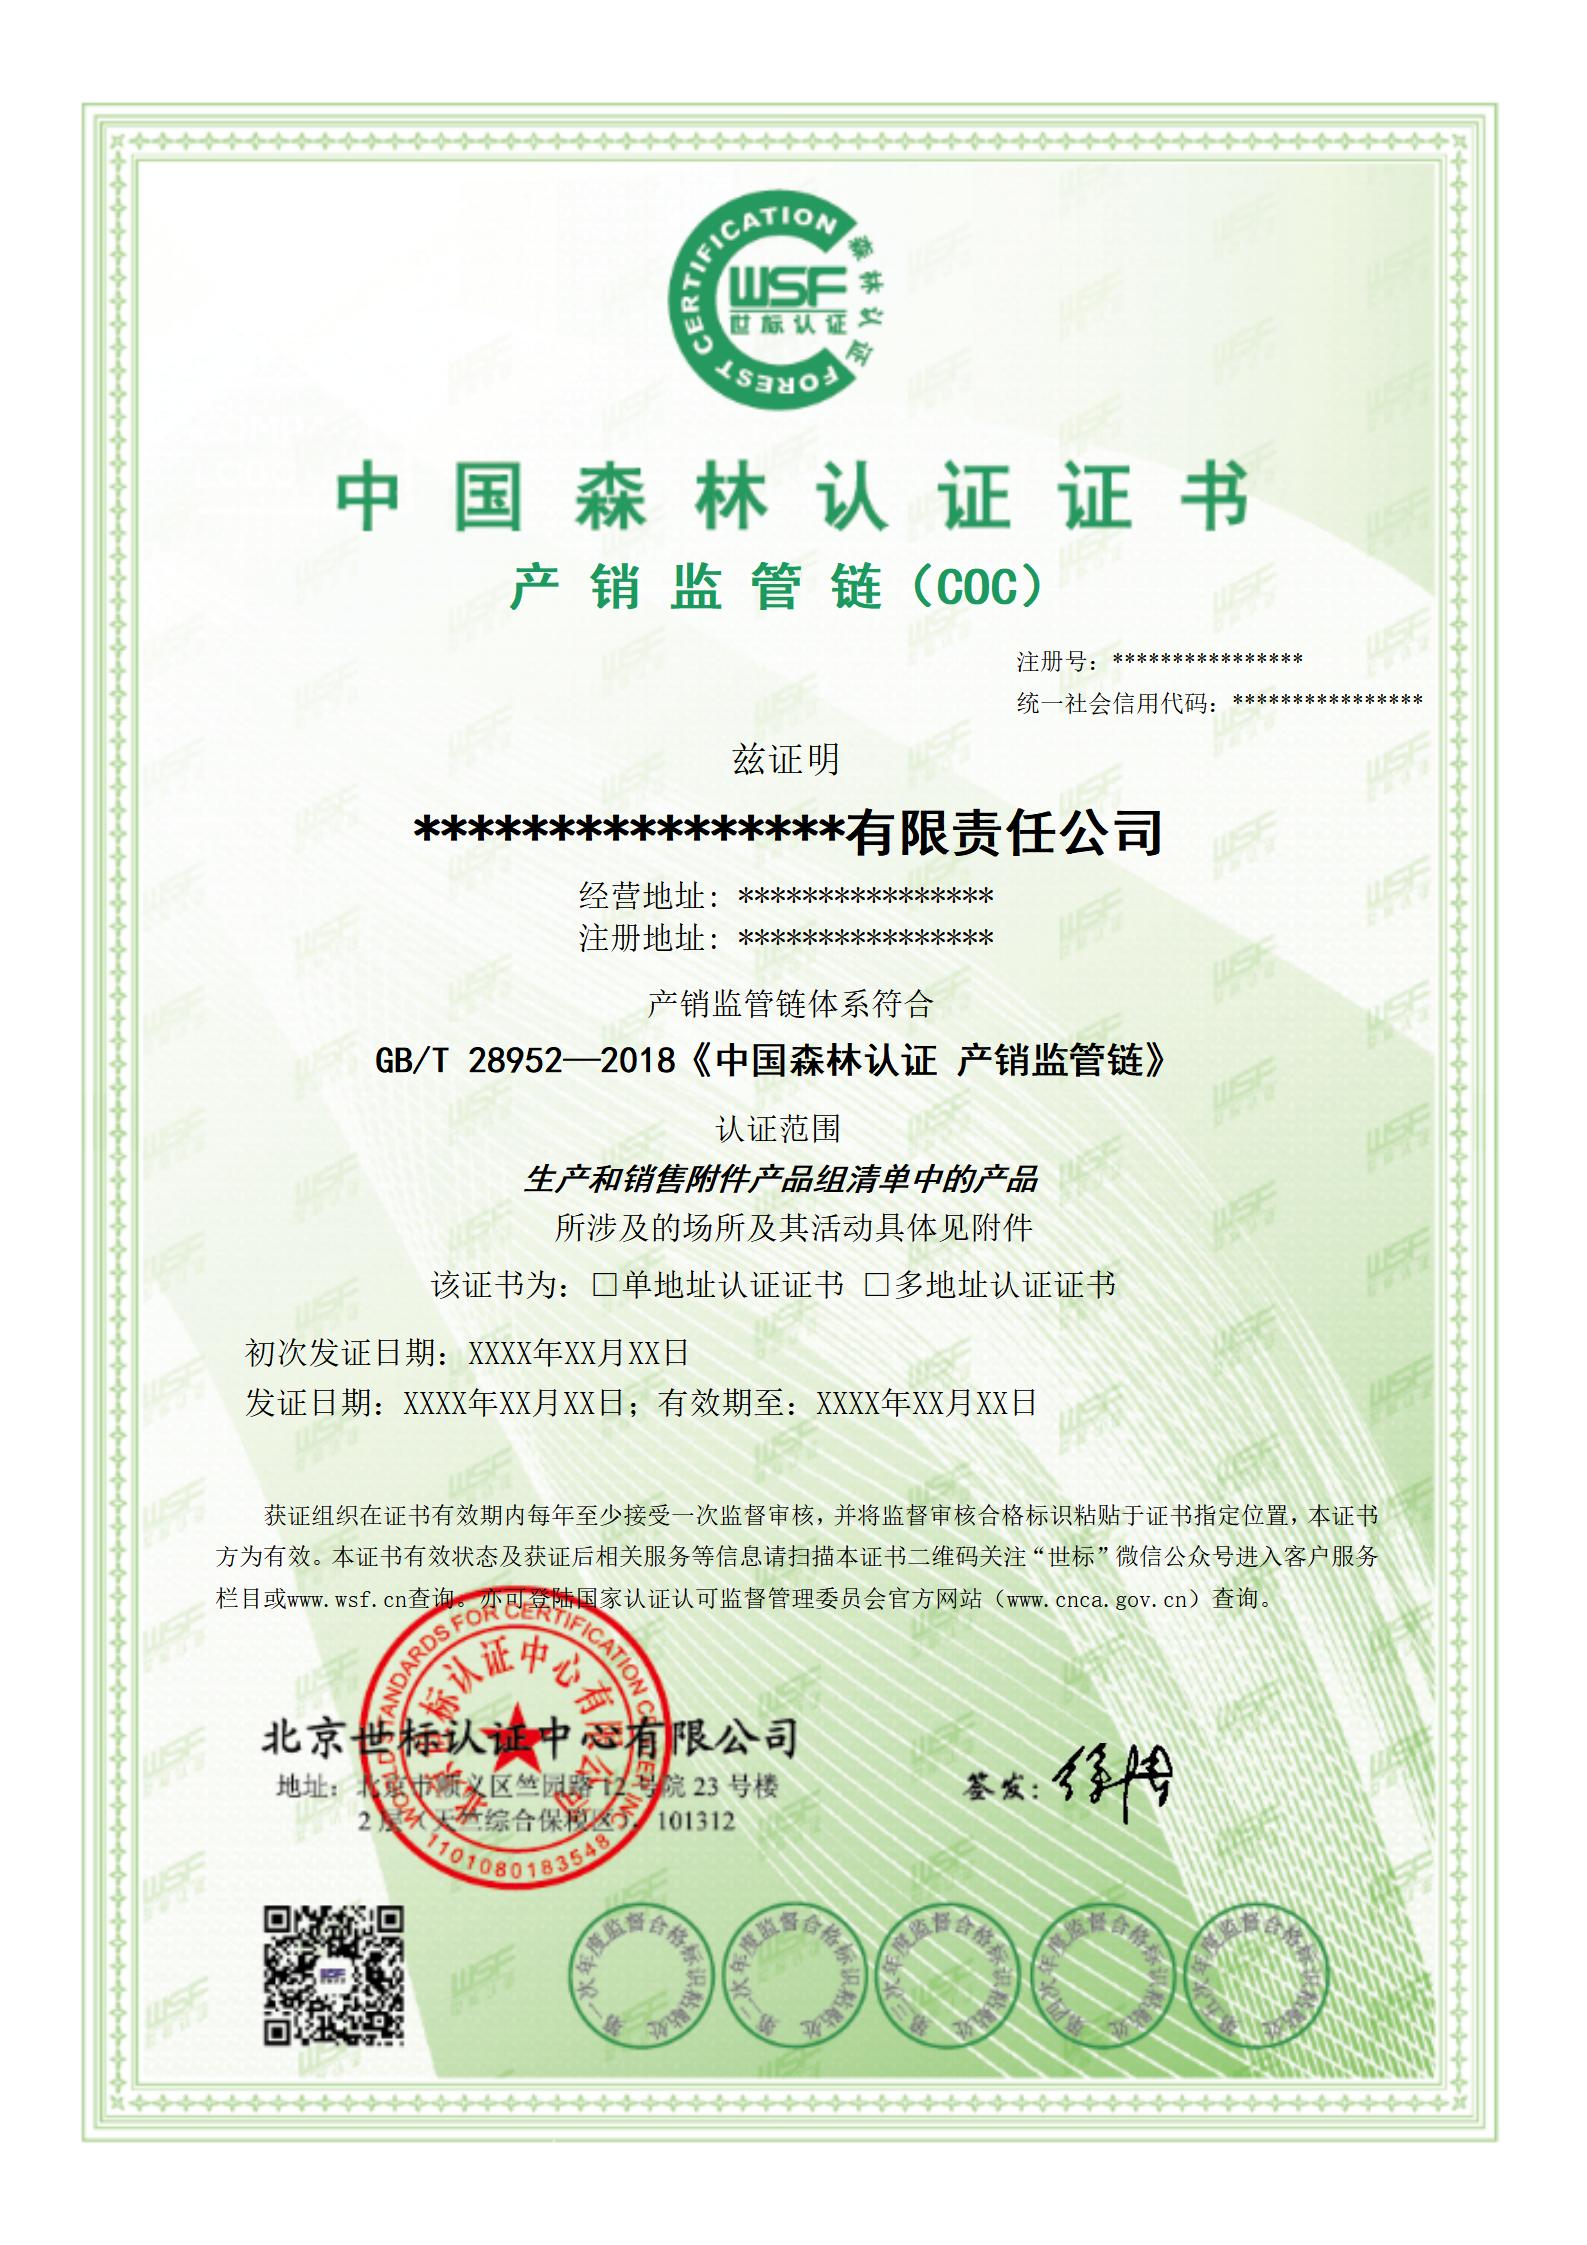 森林认证产销监管链认证证书样本--中文2023.7.27_01.jpg